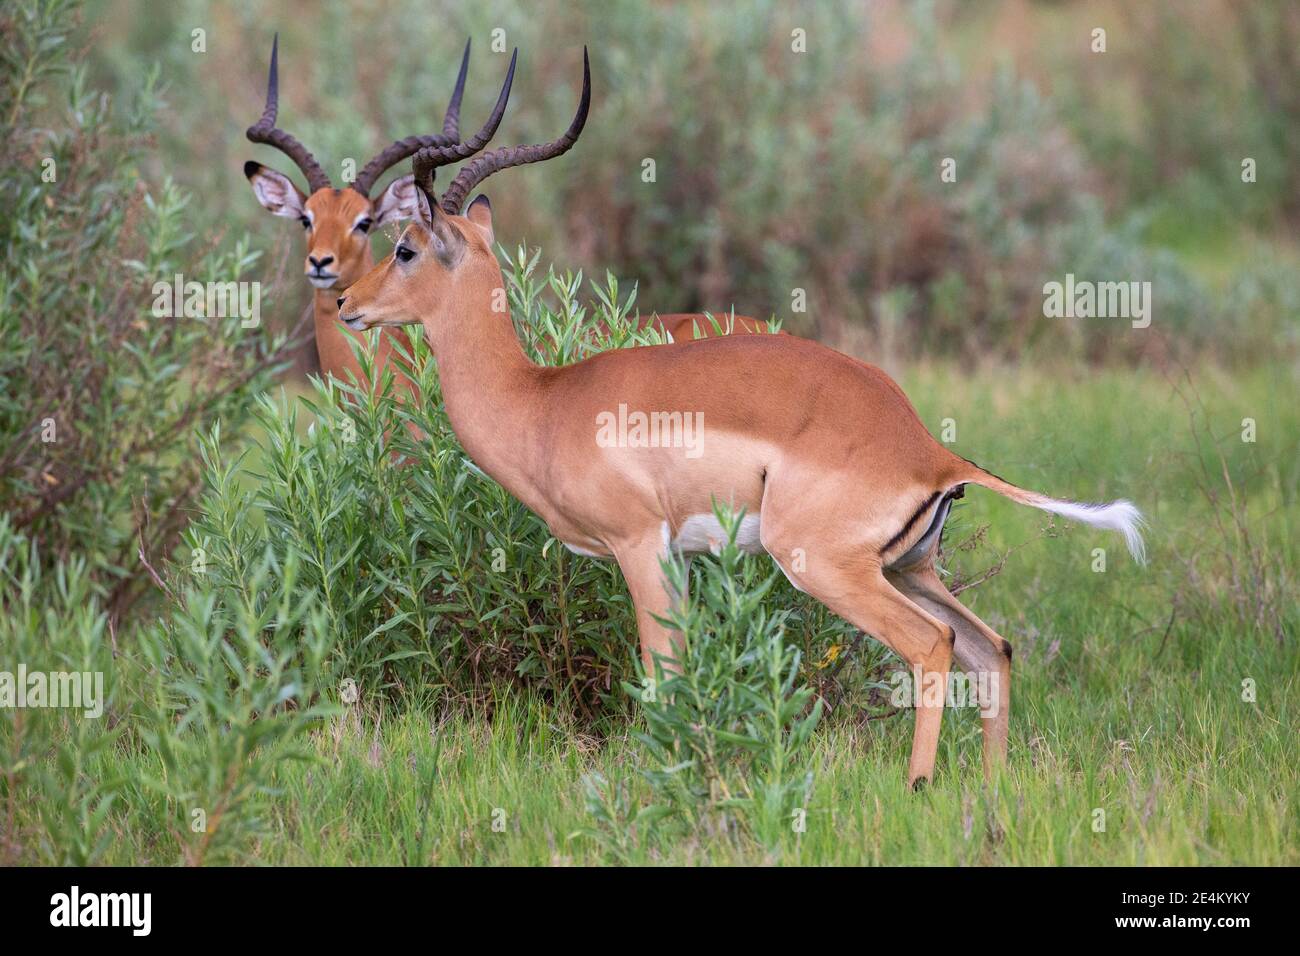 Impala (Aepyceros melampus). Montrant striée, en forme de S, lyrate, cornes de mâles adultes. Défécation sous forme de pastilles. Recyclage de la végétation. Rupture de cellulose Banque D'Images